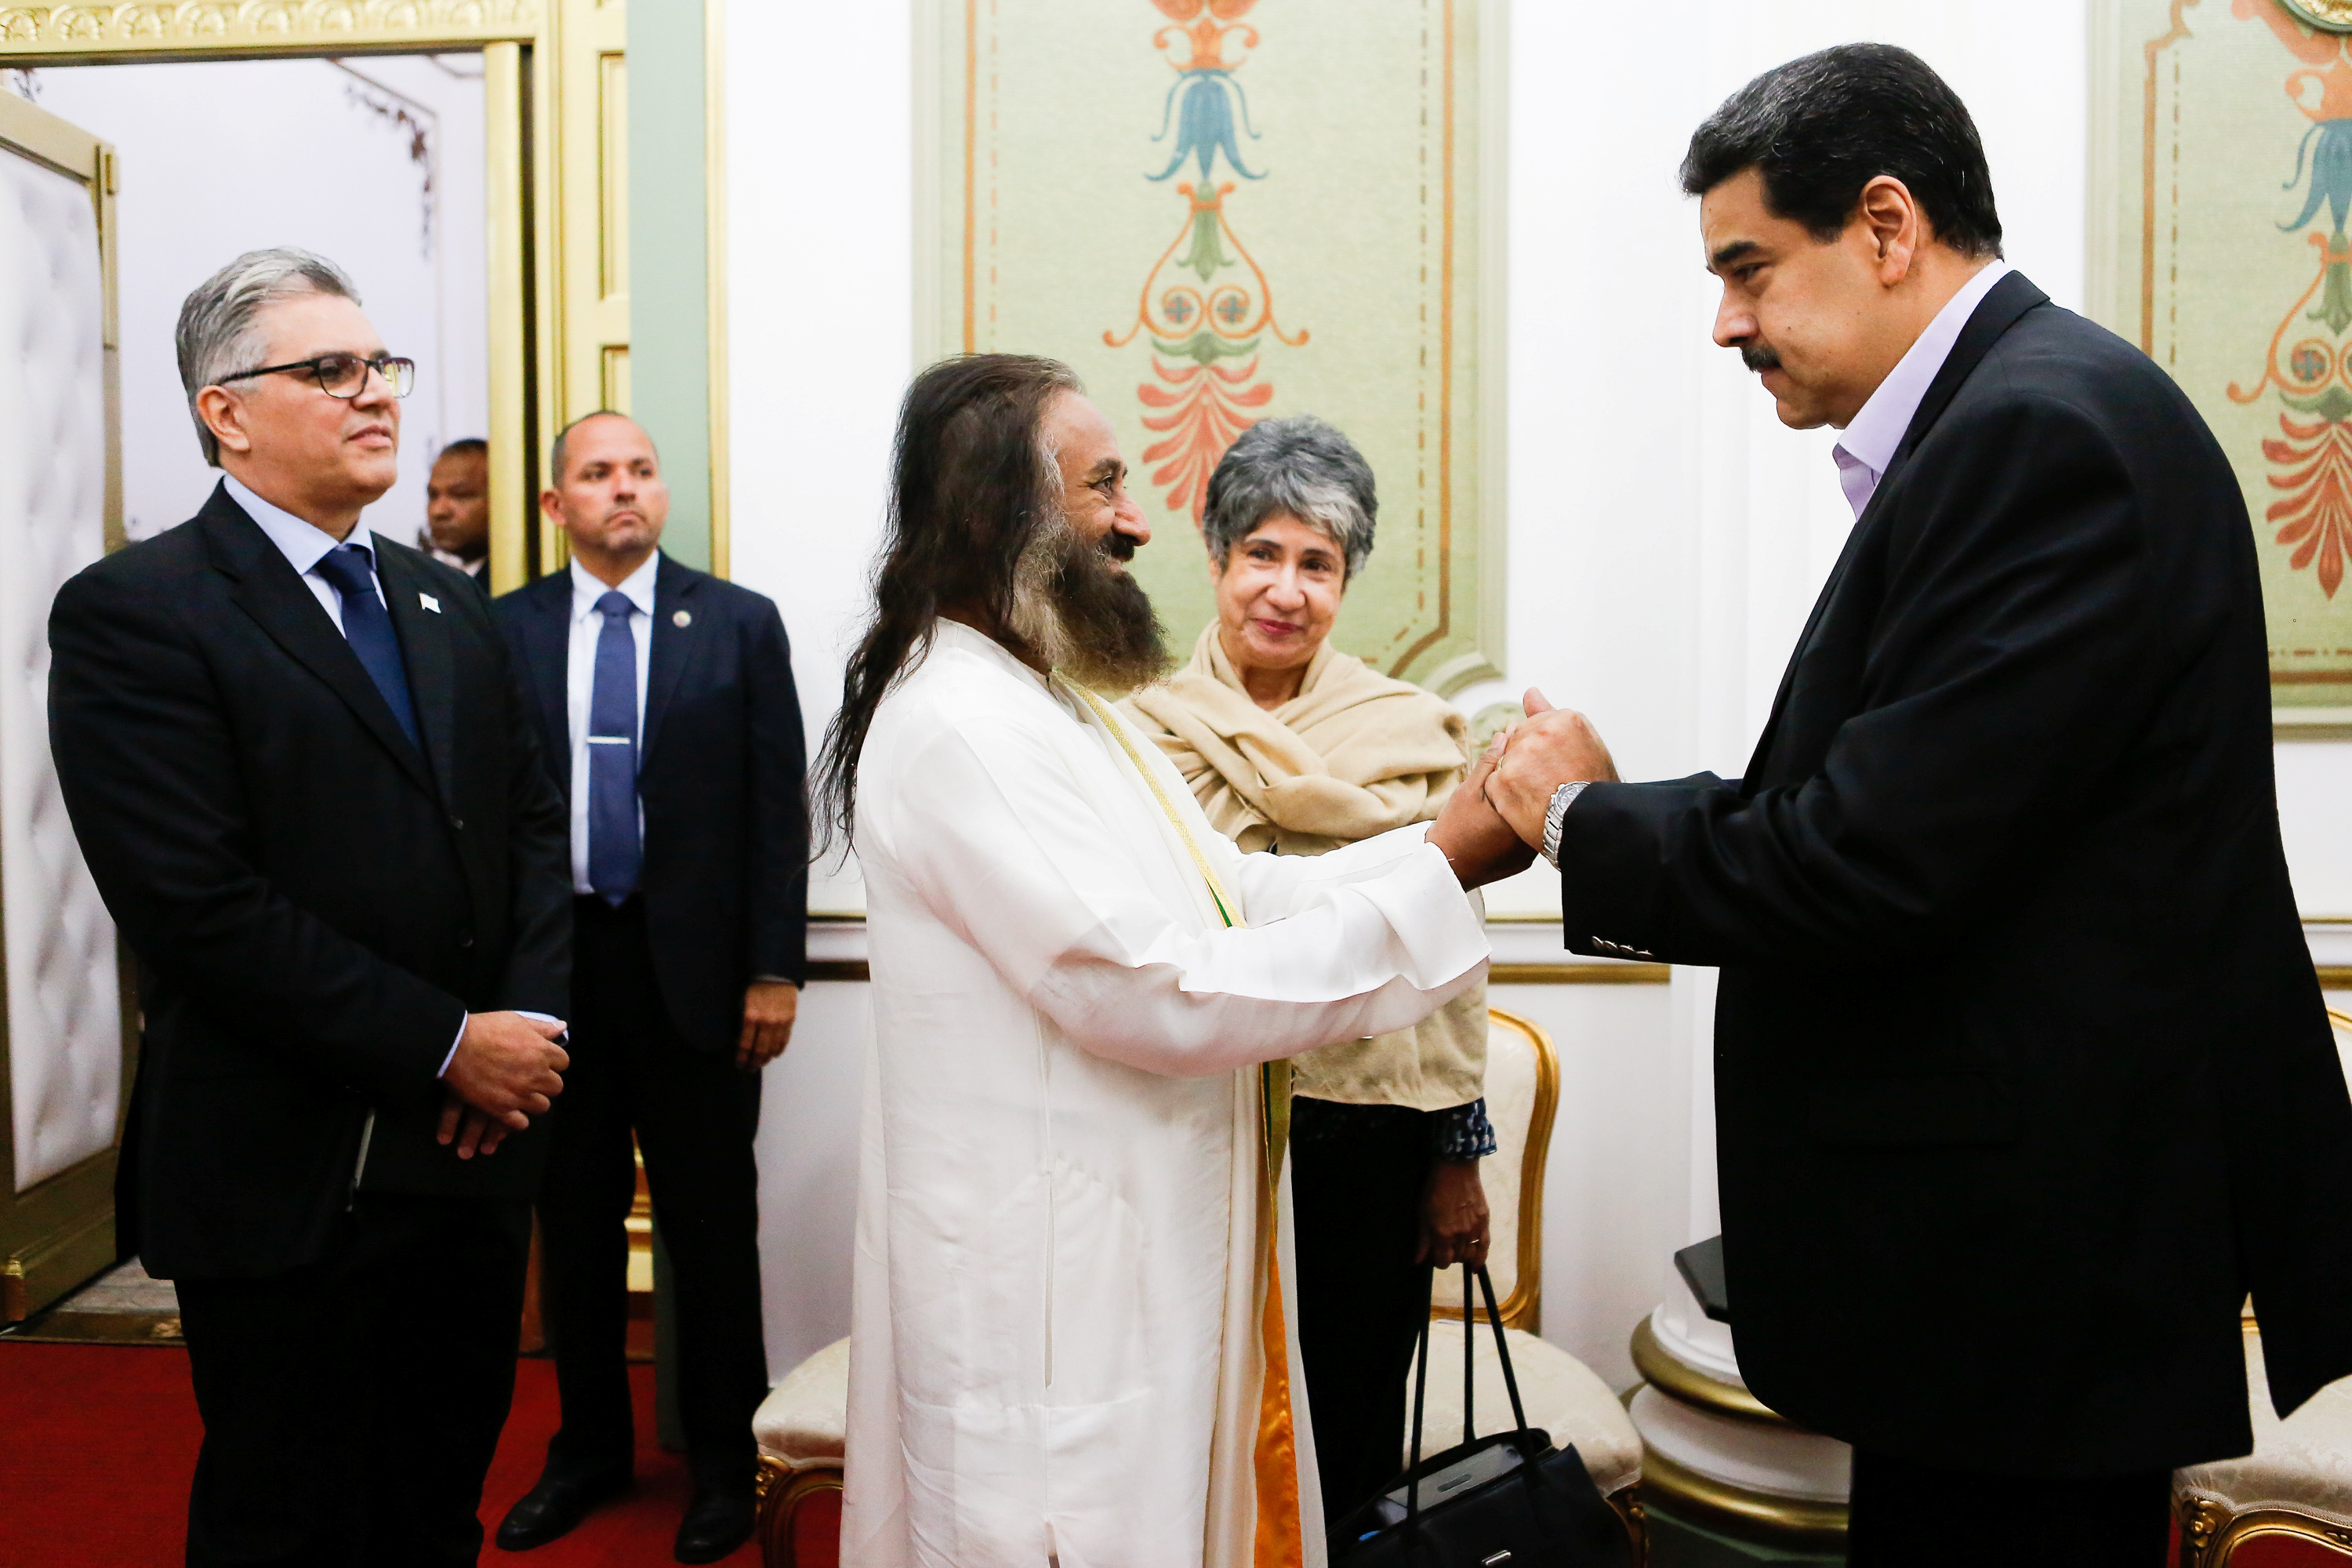 Huele a guiso: La historia detrás del charlatán que Maduro piensa poner de mediador ante Guaidó